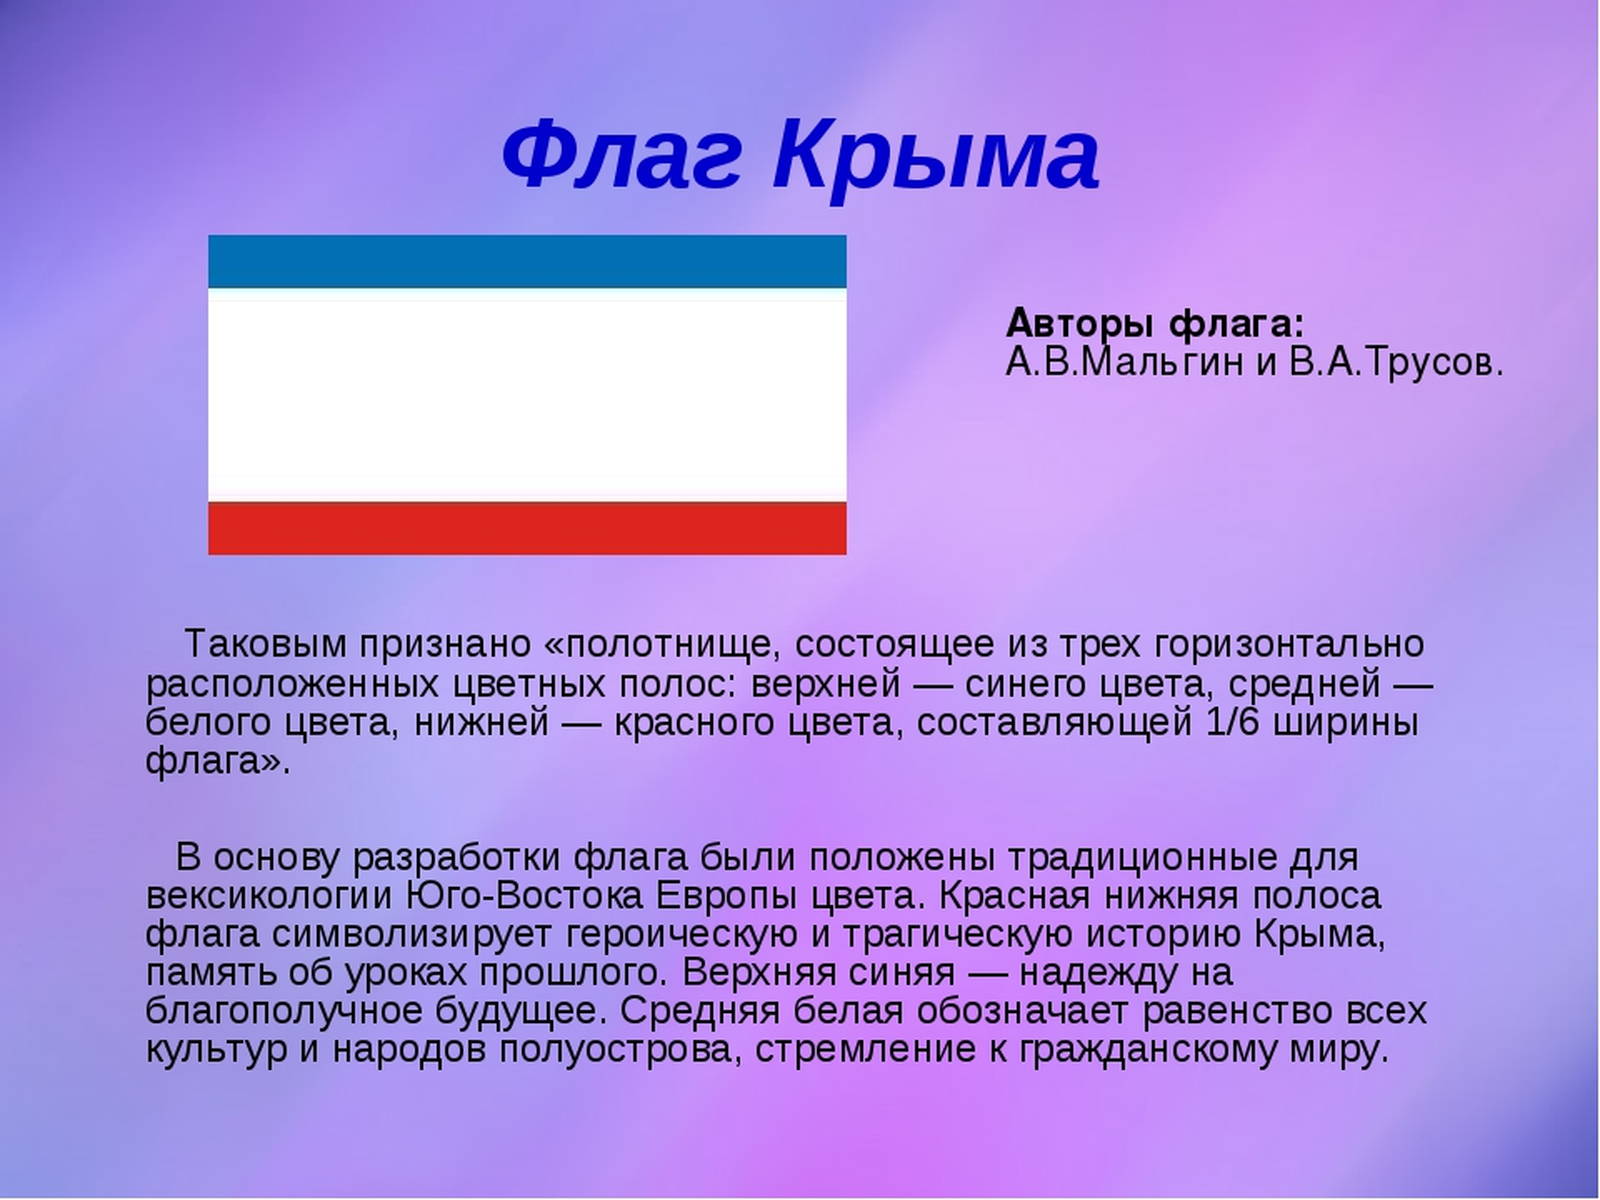 флаг россии фото значение цветов триколора